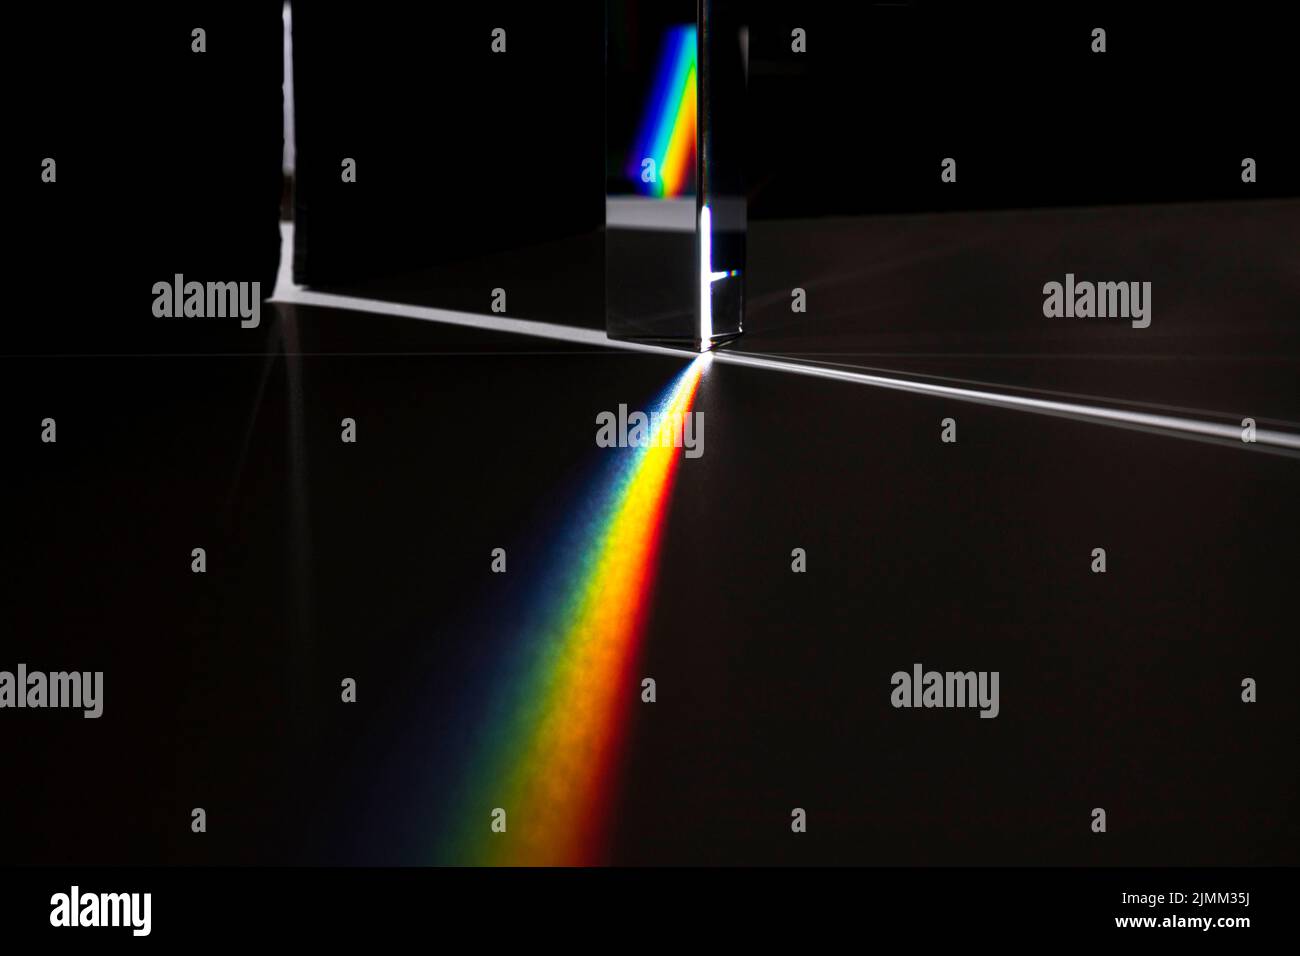 Concept de lumière de dispersion à prisme Banque D'Images